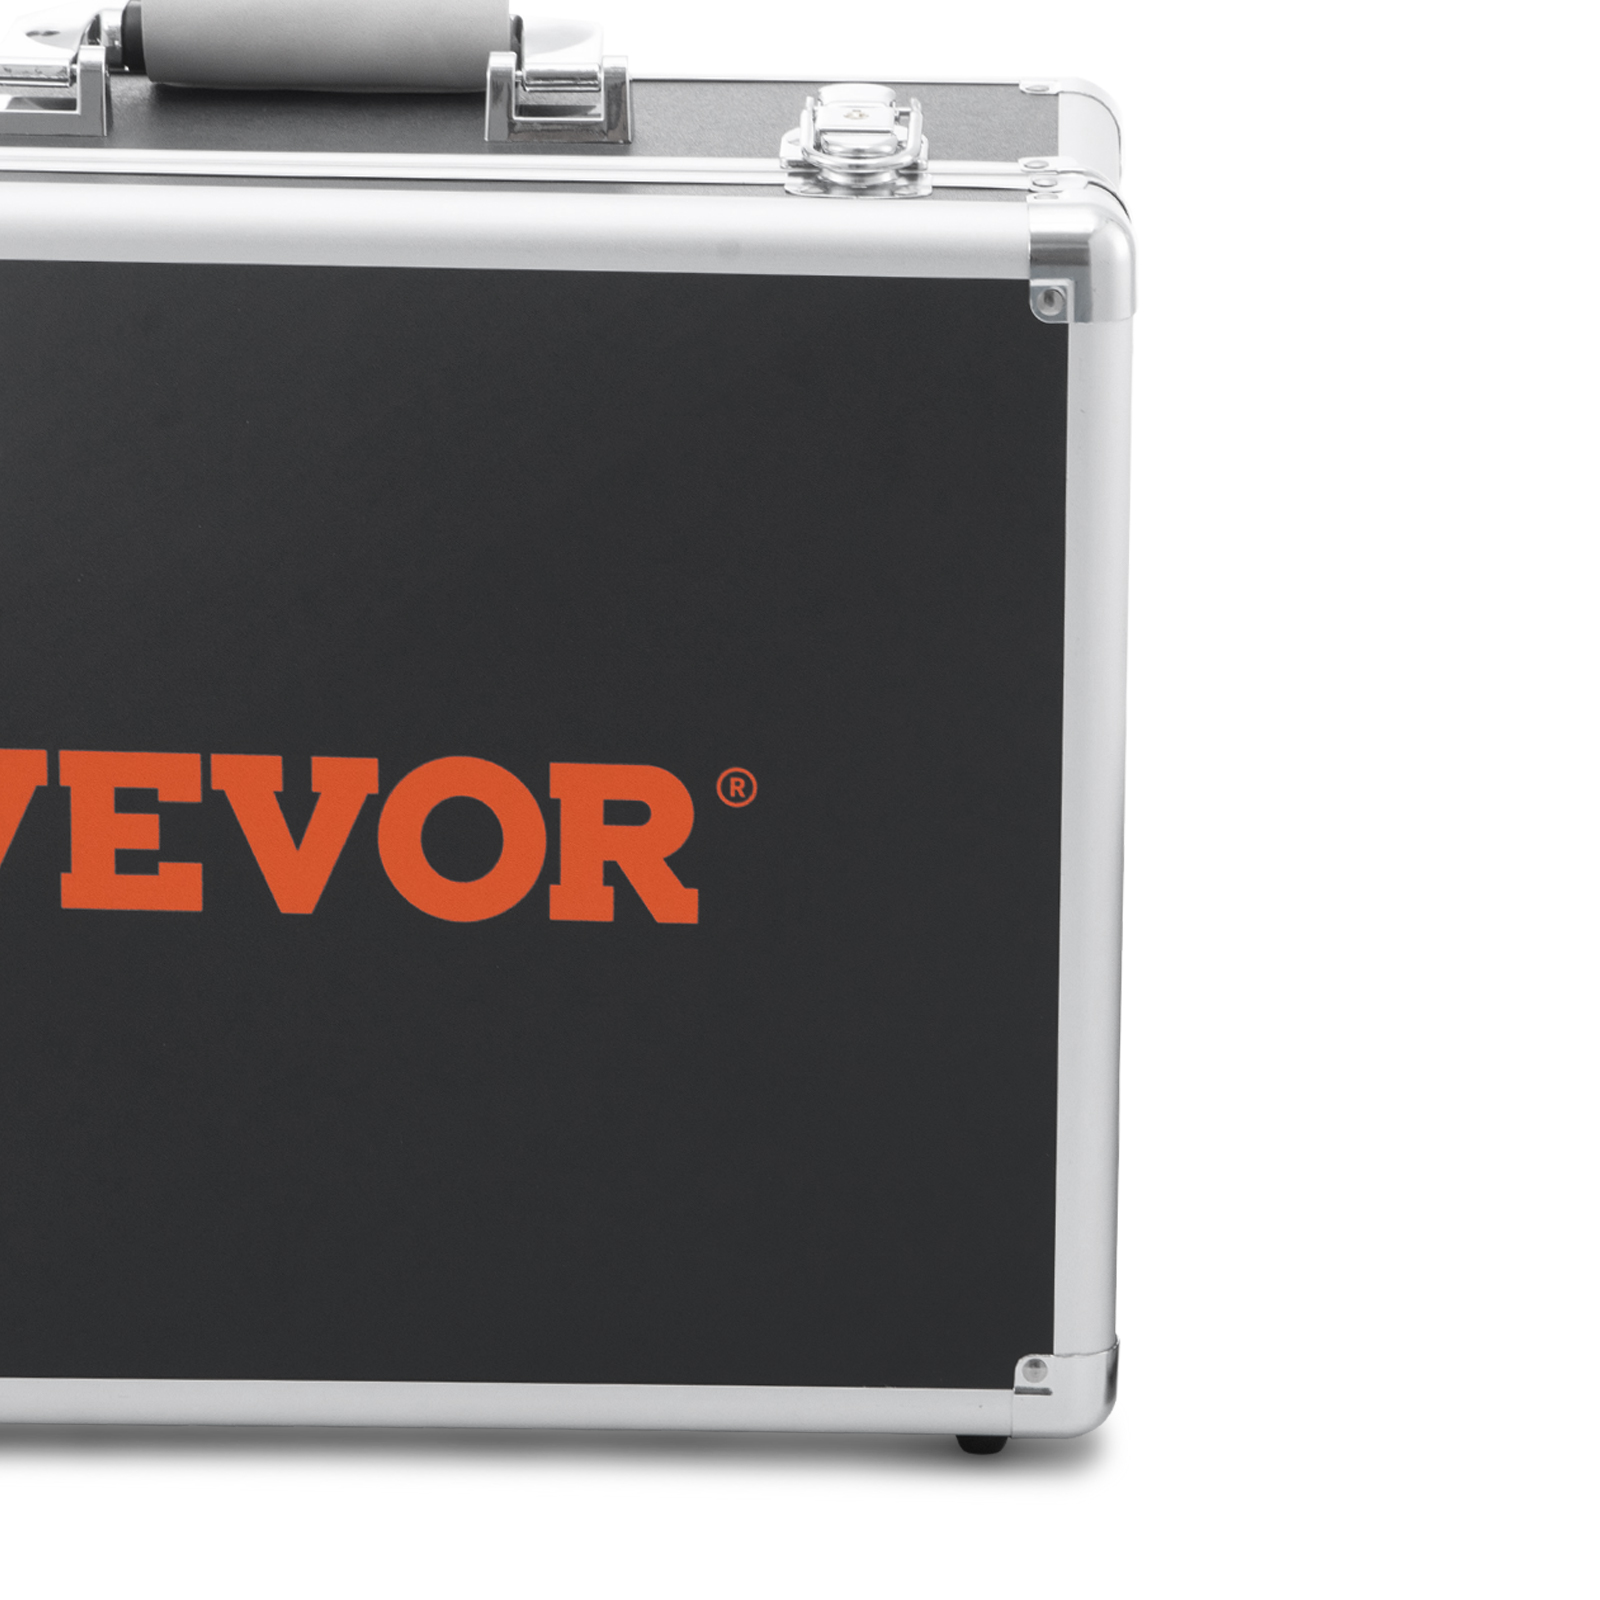 VEVOR труба камера инспекции камера 20 м промышленные 1000TVL эндоскоп канализации камера 16GB SD карты IP68 водонепроницаемый 480P цветной монитор Dvr 4500mAh